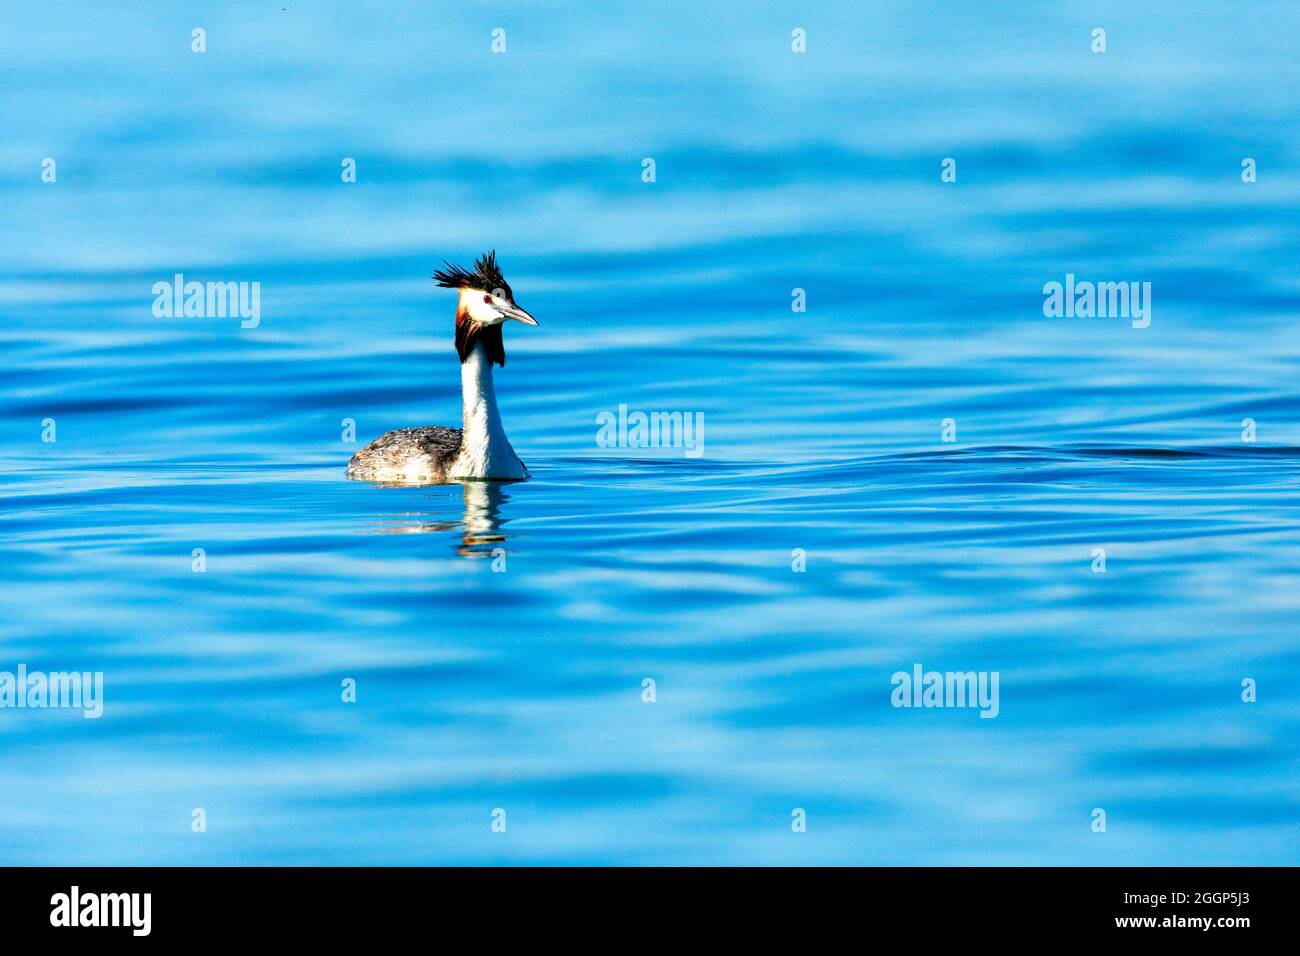 Haubentaucher im Prachtkleid schwimmt in blauem Wasser, Europa Stock Photo